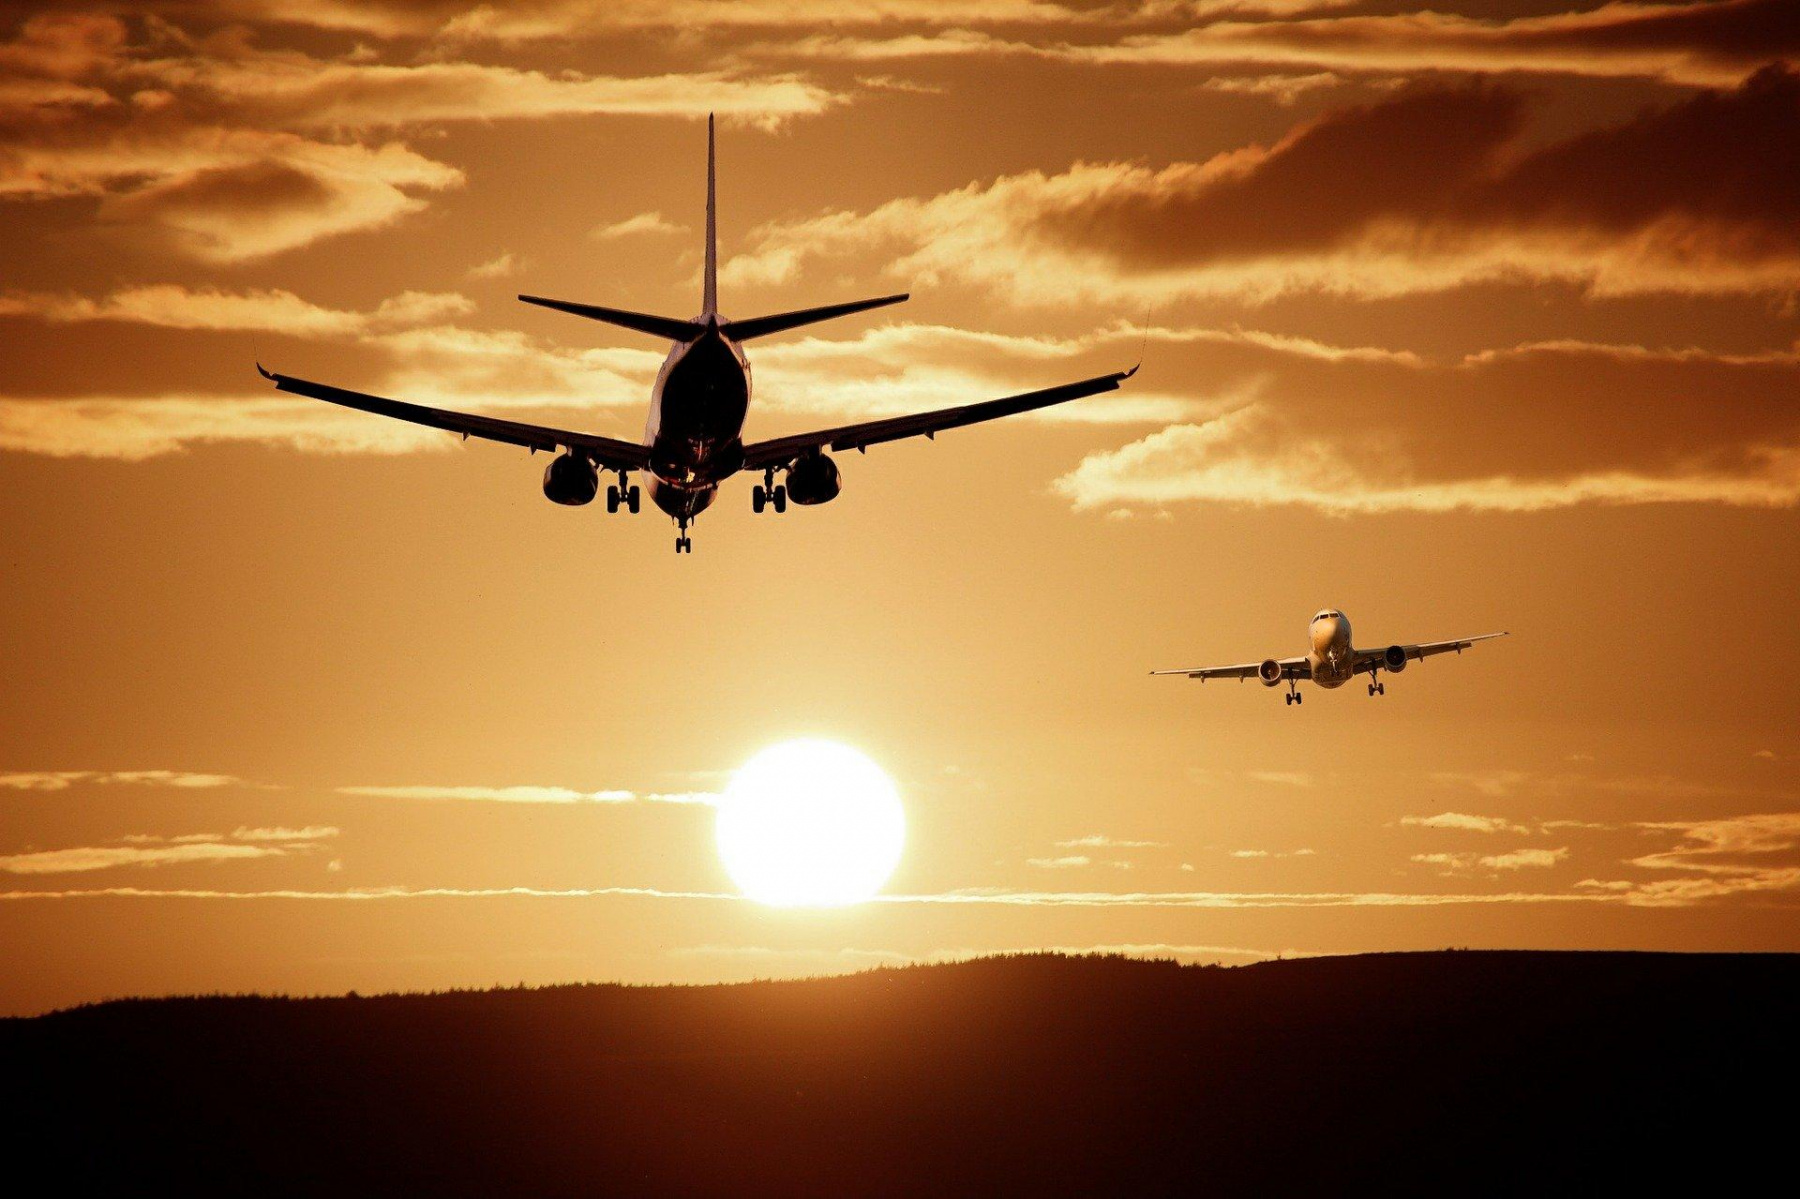 Transport aérien: De l'optimisme en dépit d'une année 2021 compliquée